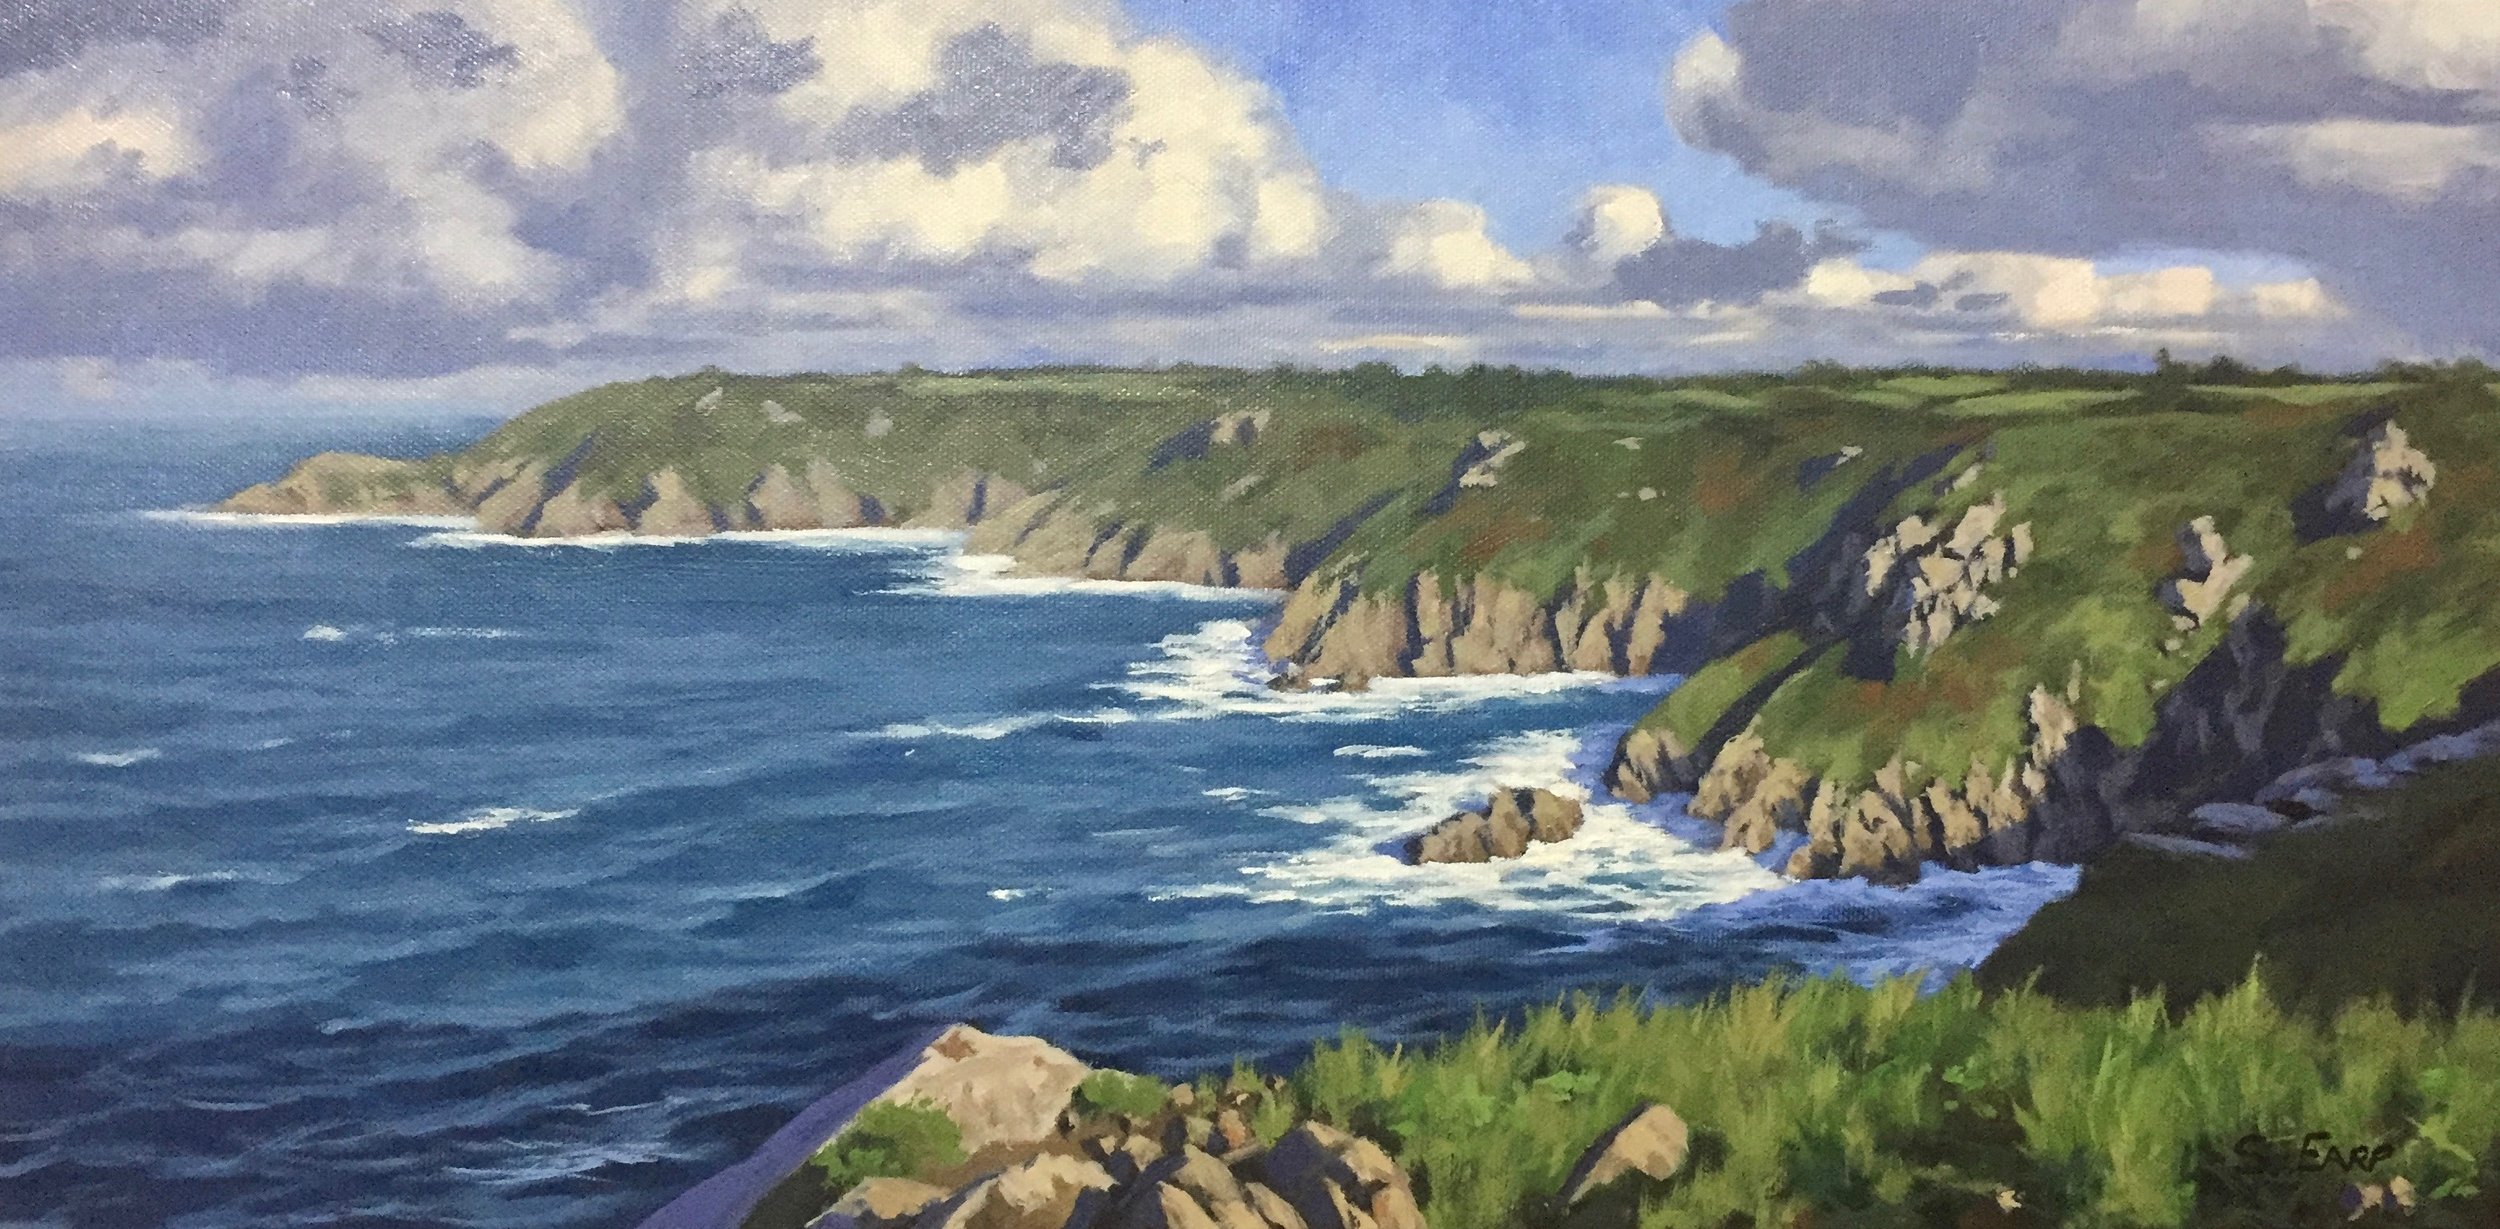 Icart Point Guernsey - oil painting - Samuel Earp - landscape artist.jpg